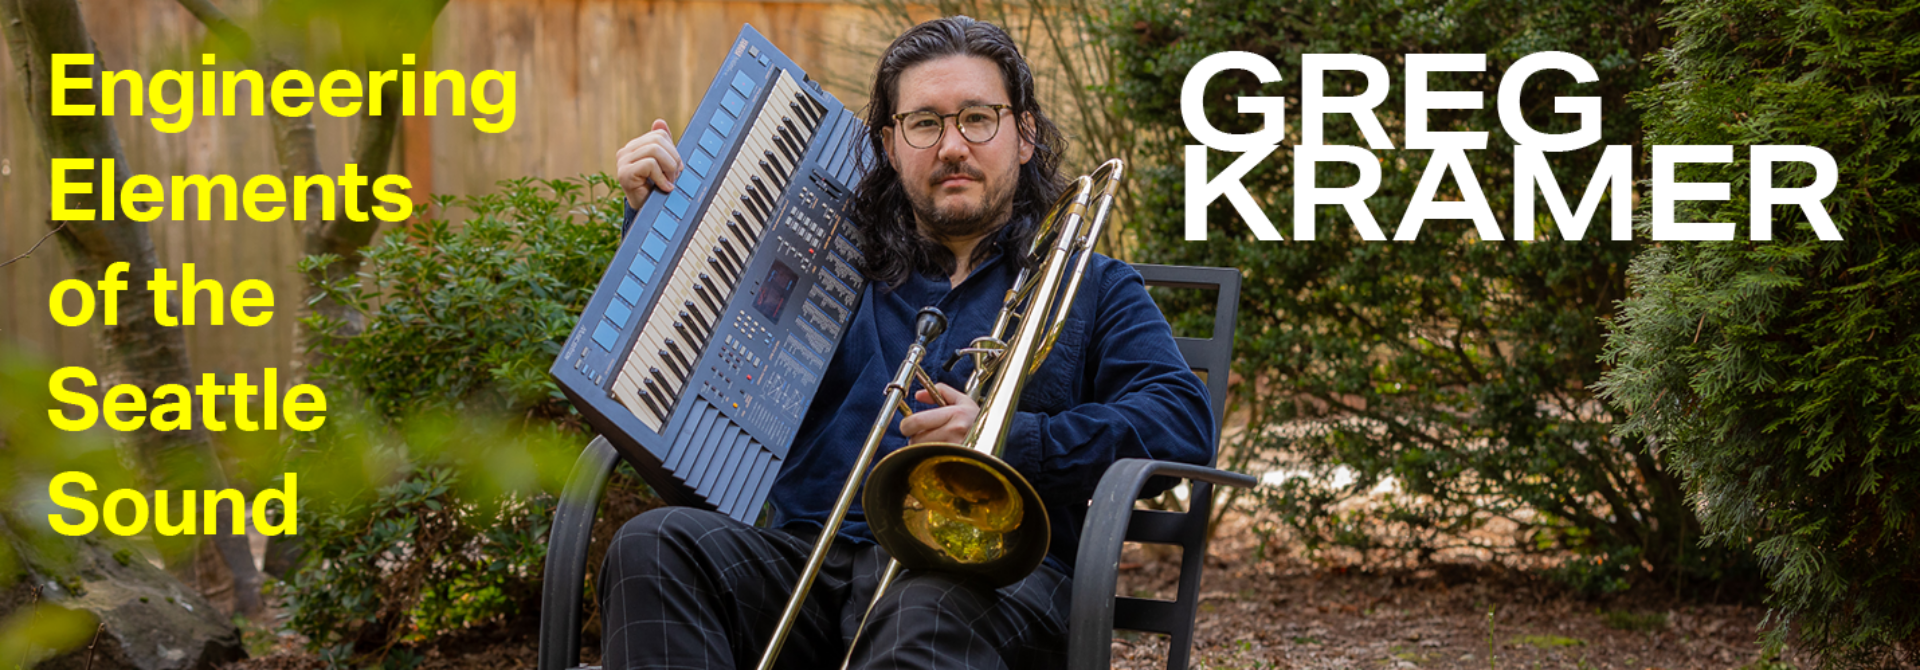 Greg Kramer Earshot Jazz Trombone Engineering Elements of the Seattle Sound